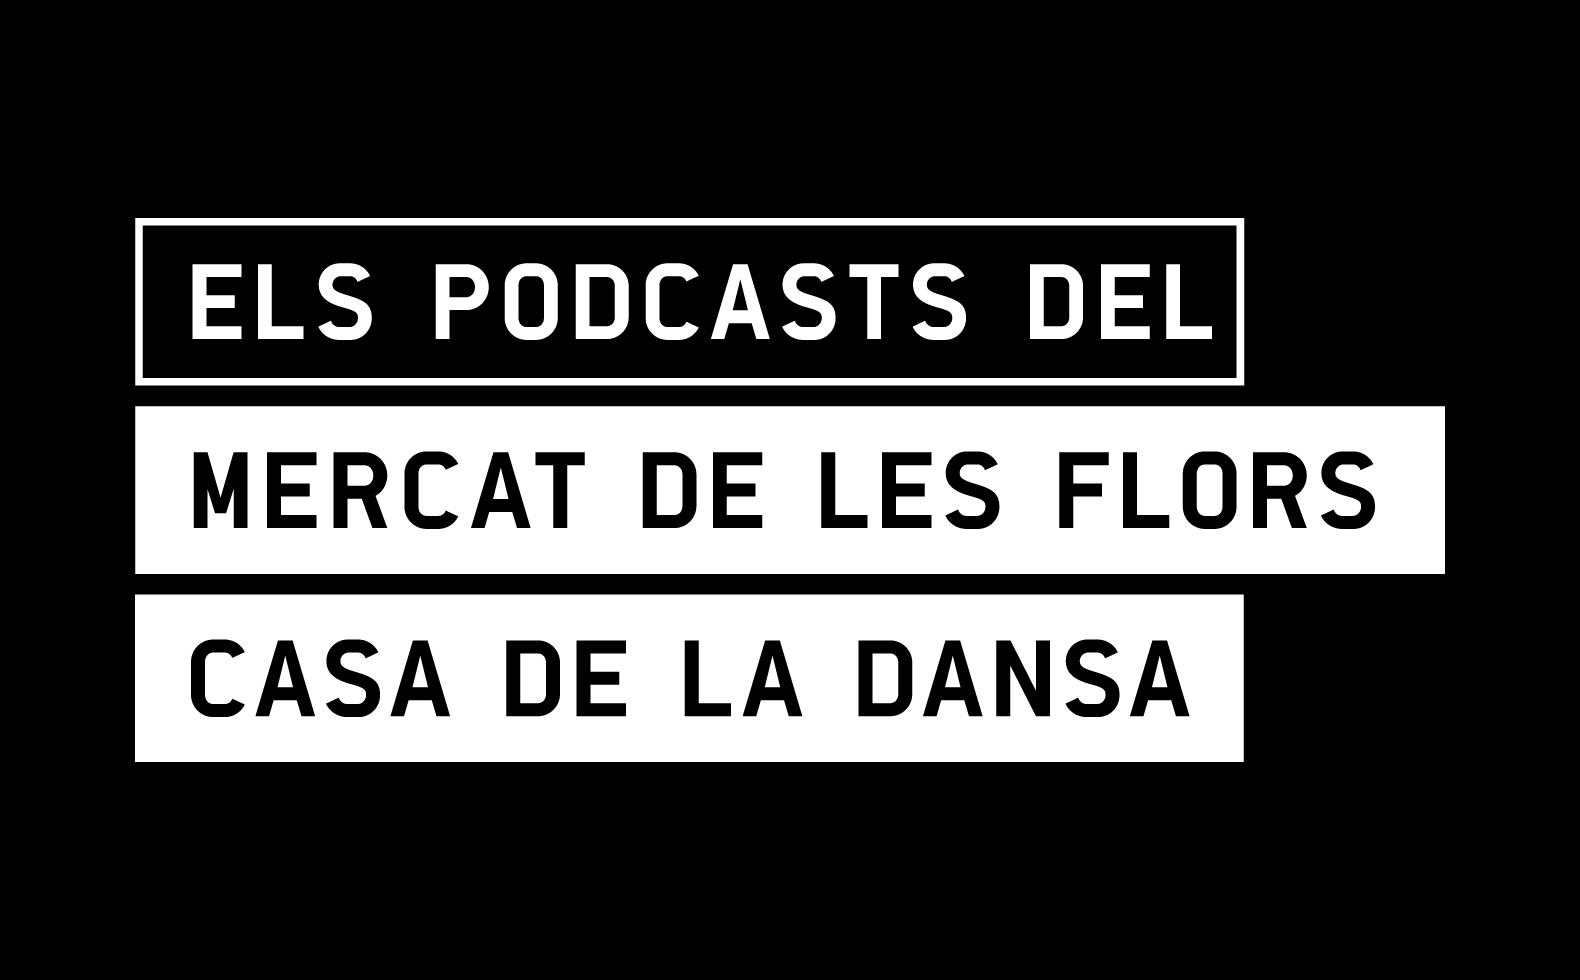 Els Podcasts del Mercat